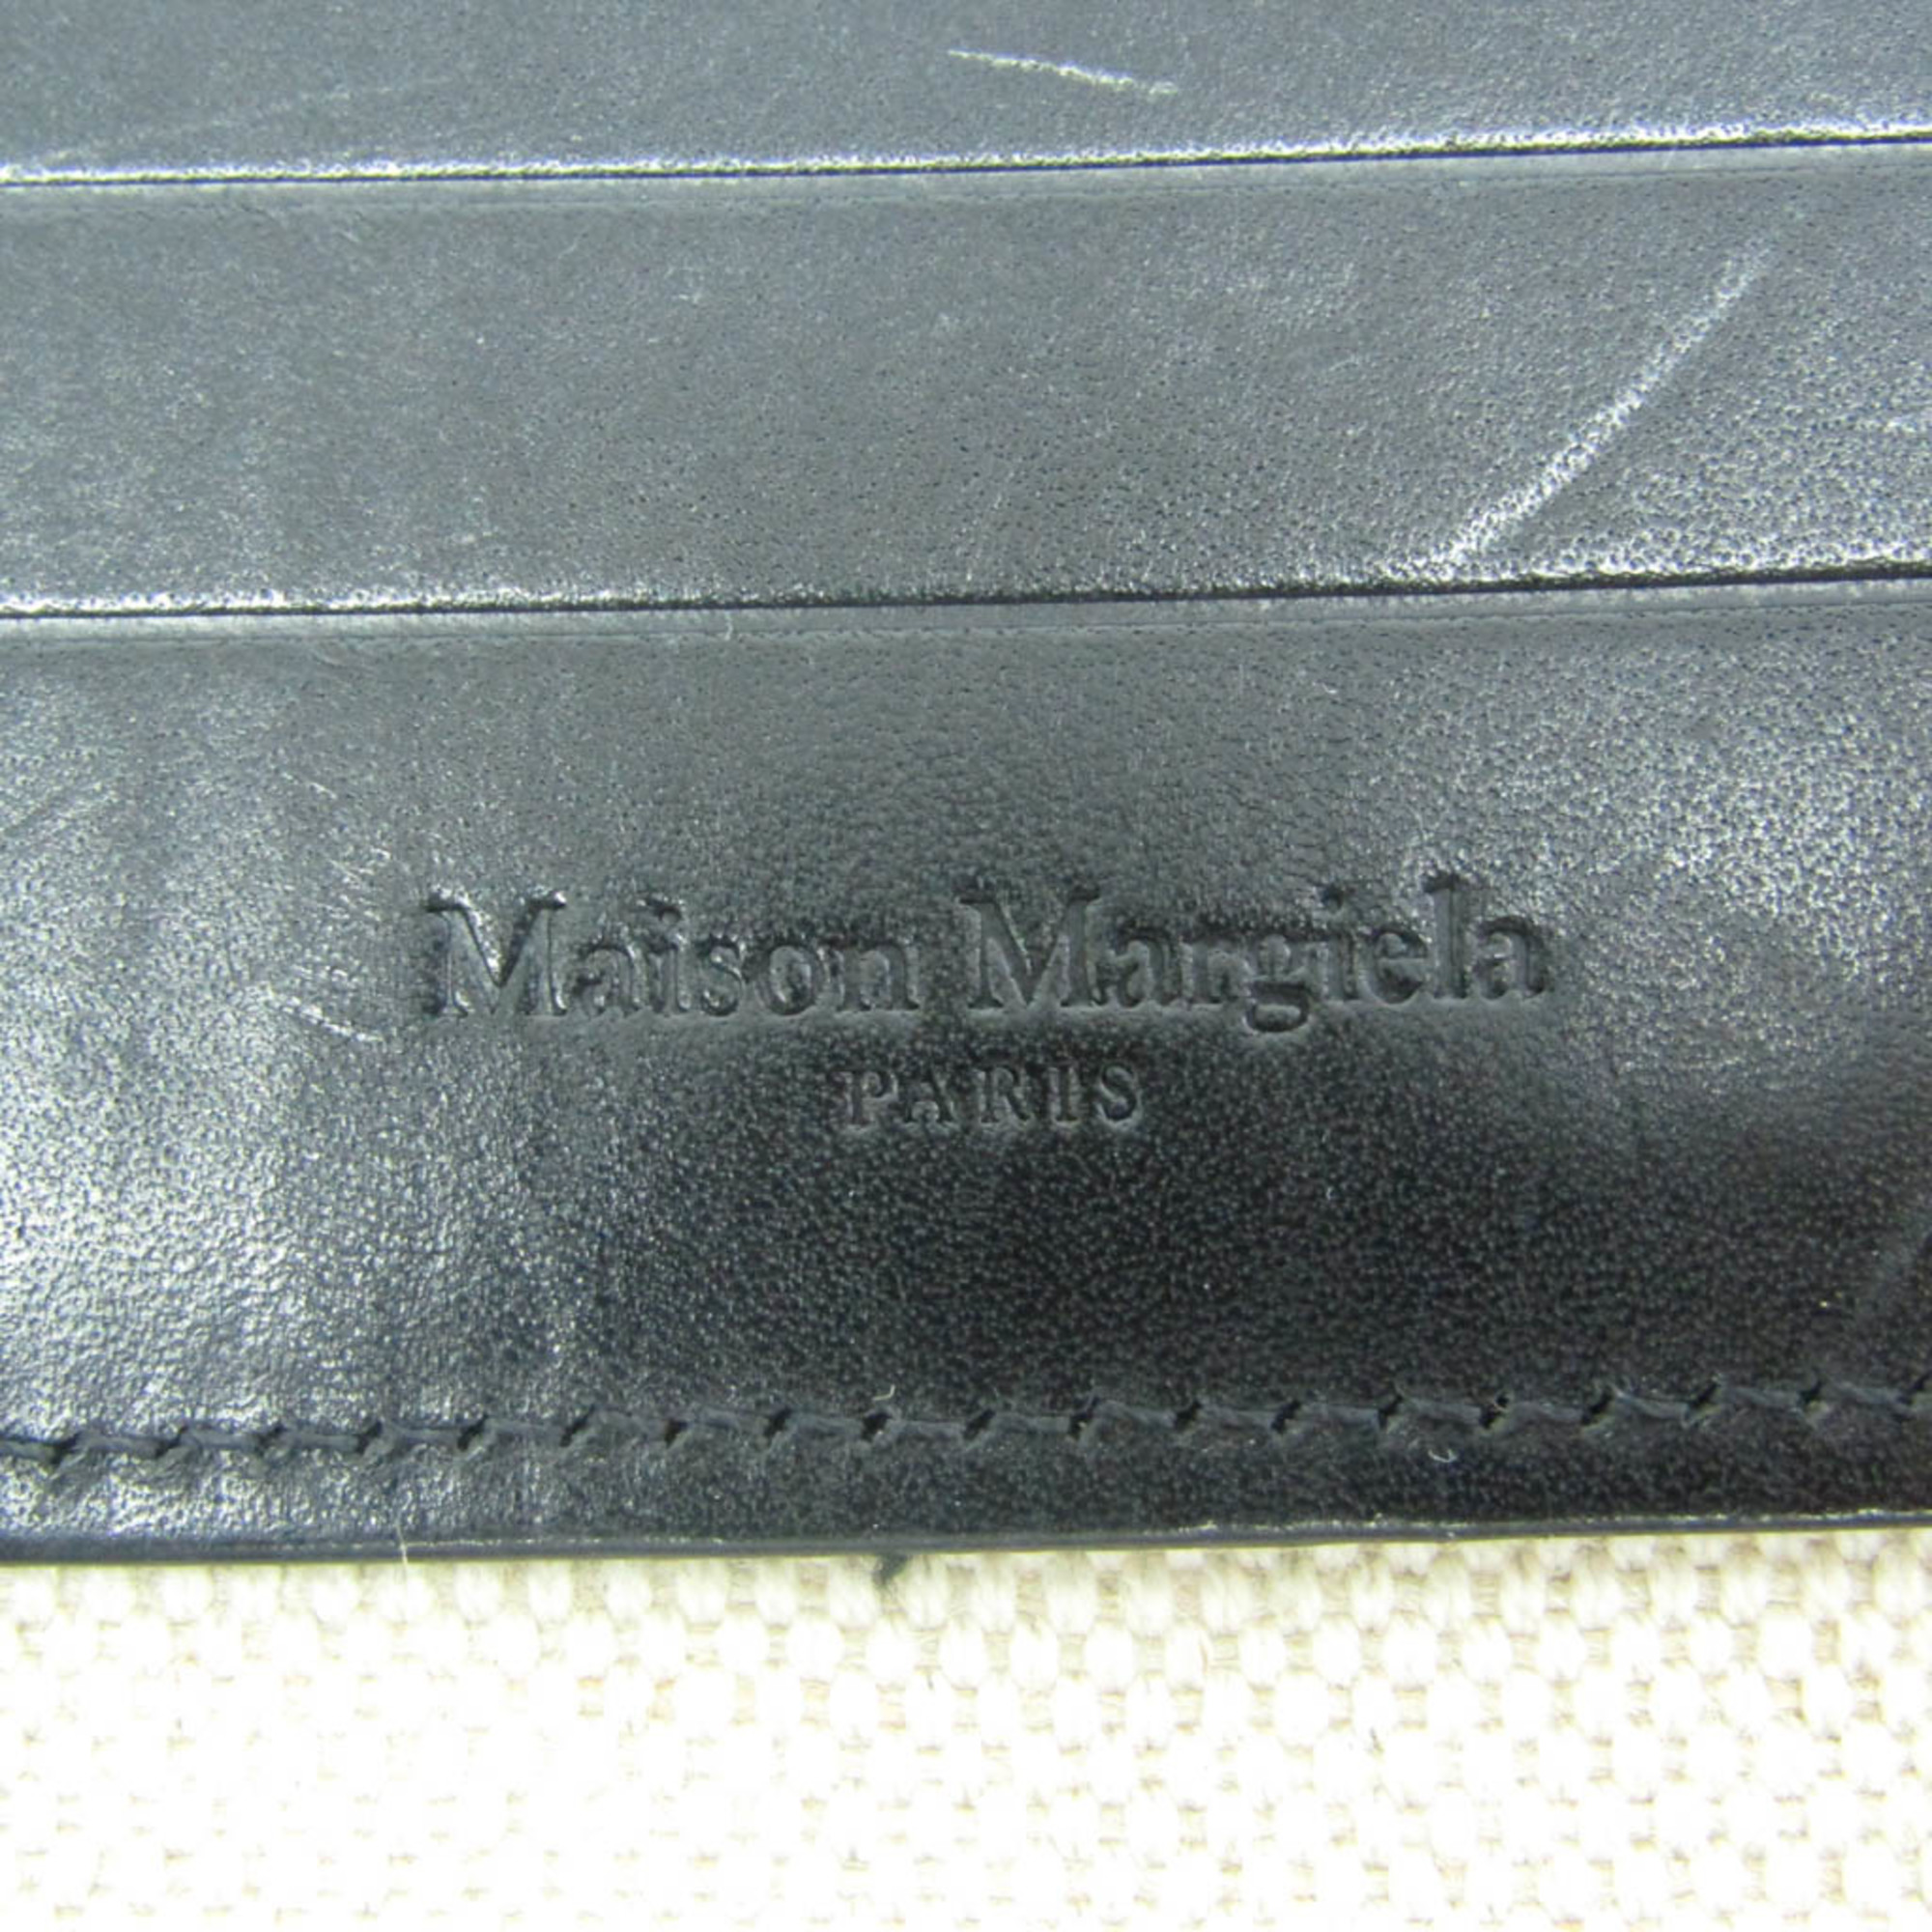 メゾン マルジェラ(Maison Margiela) ショルダーポーチ S35UI0515 レディース,メンズ レザー,PVC ショルダーバッグ ブラック